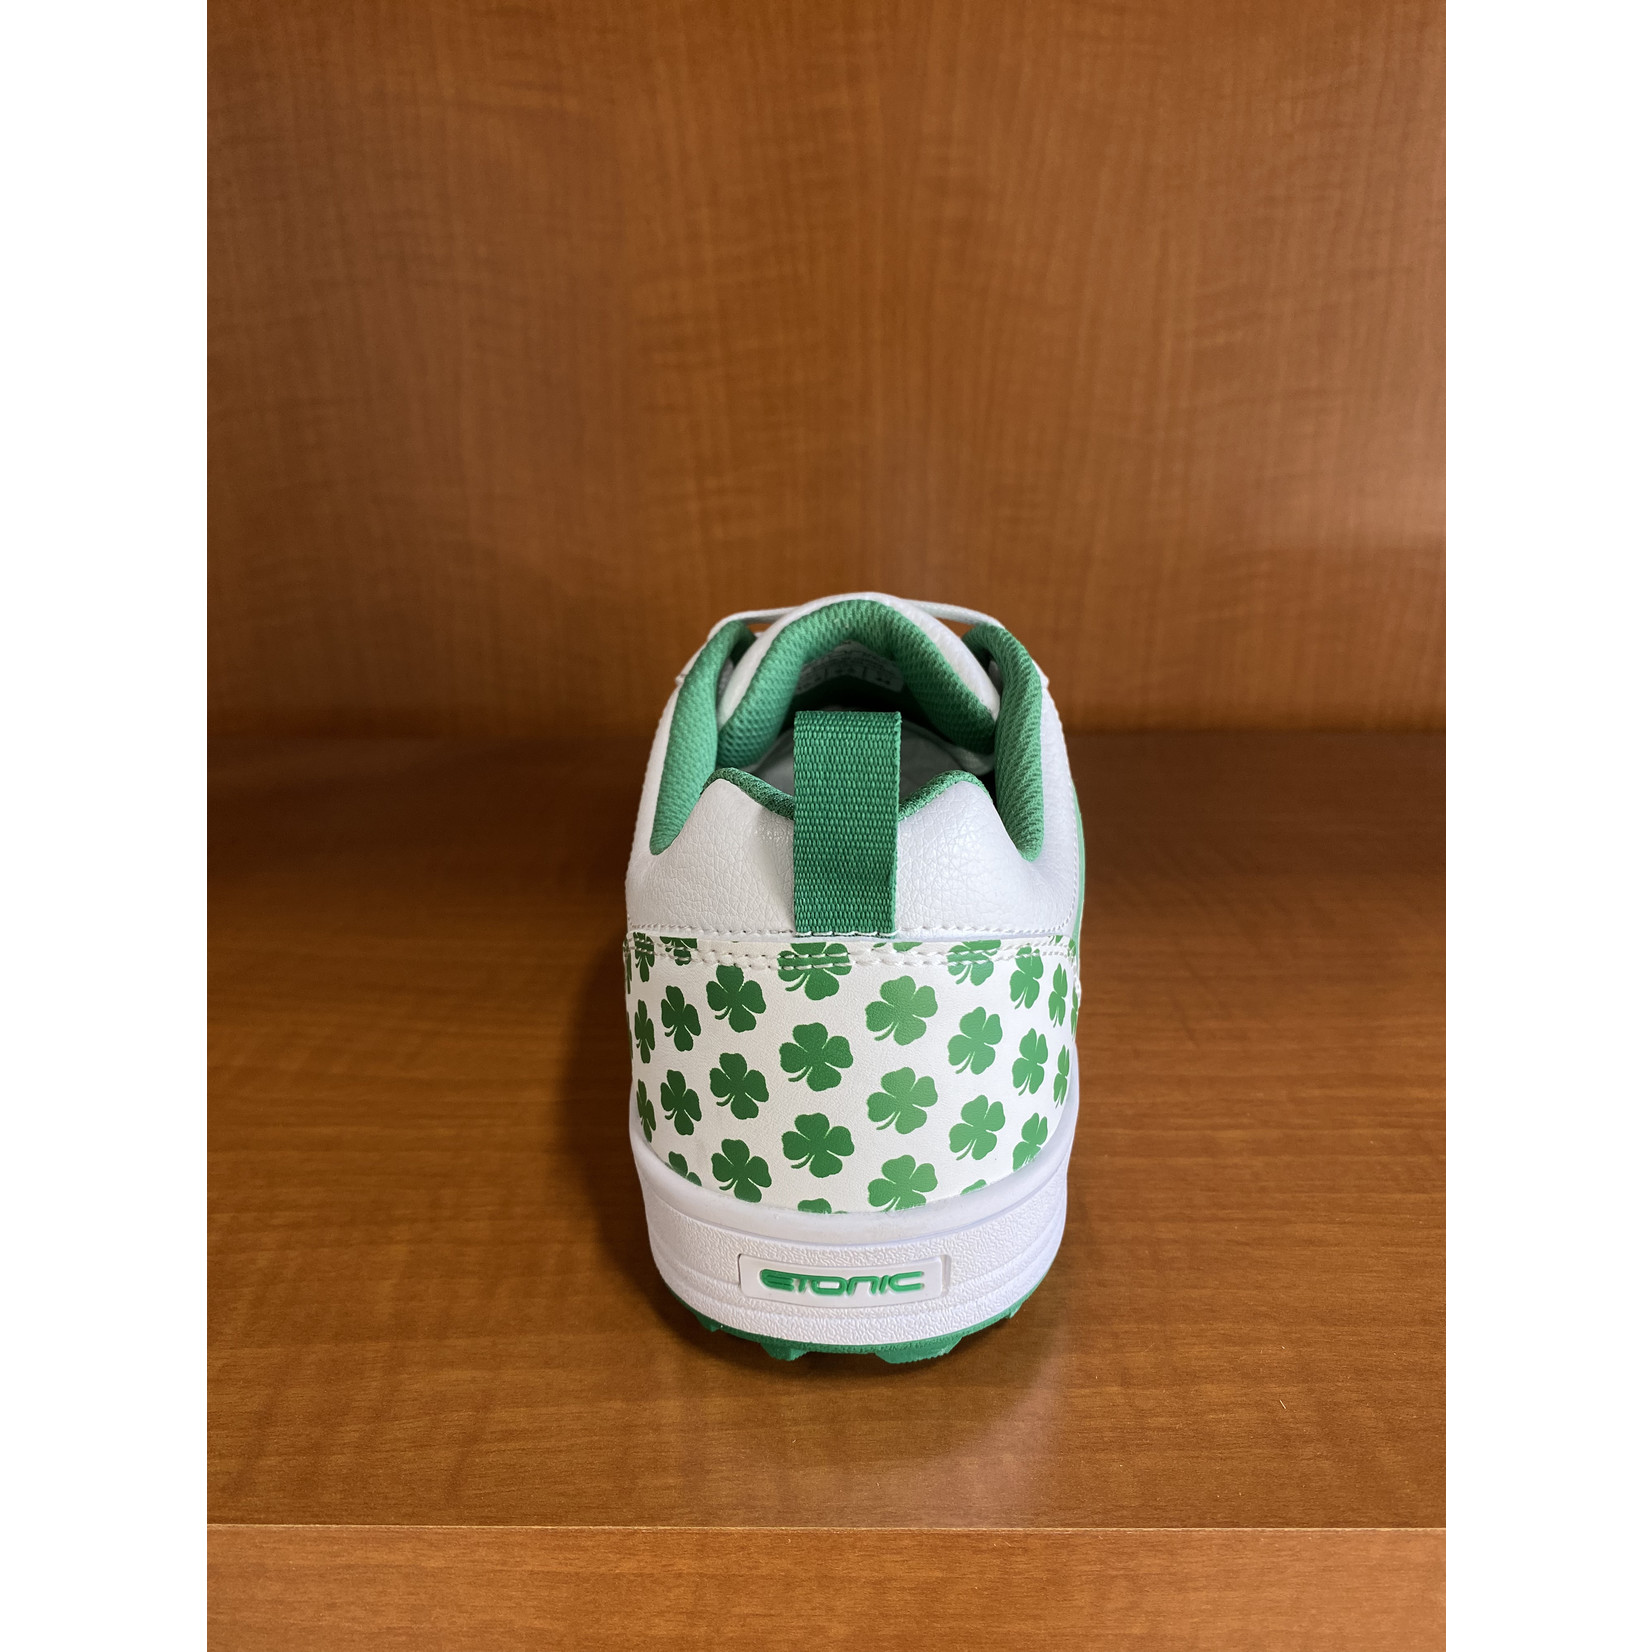 Etonic Golf Shoes (Shamrock) - Size10.5